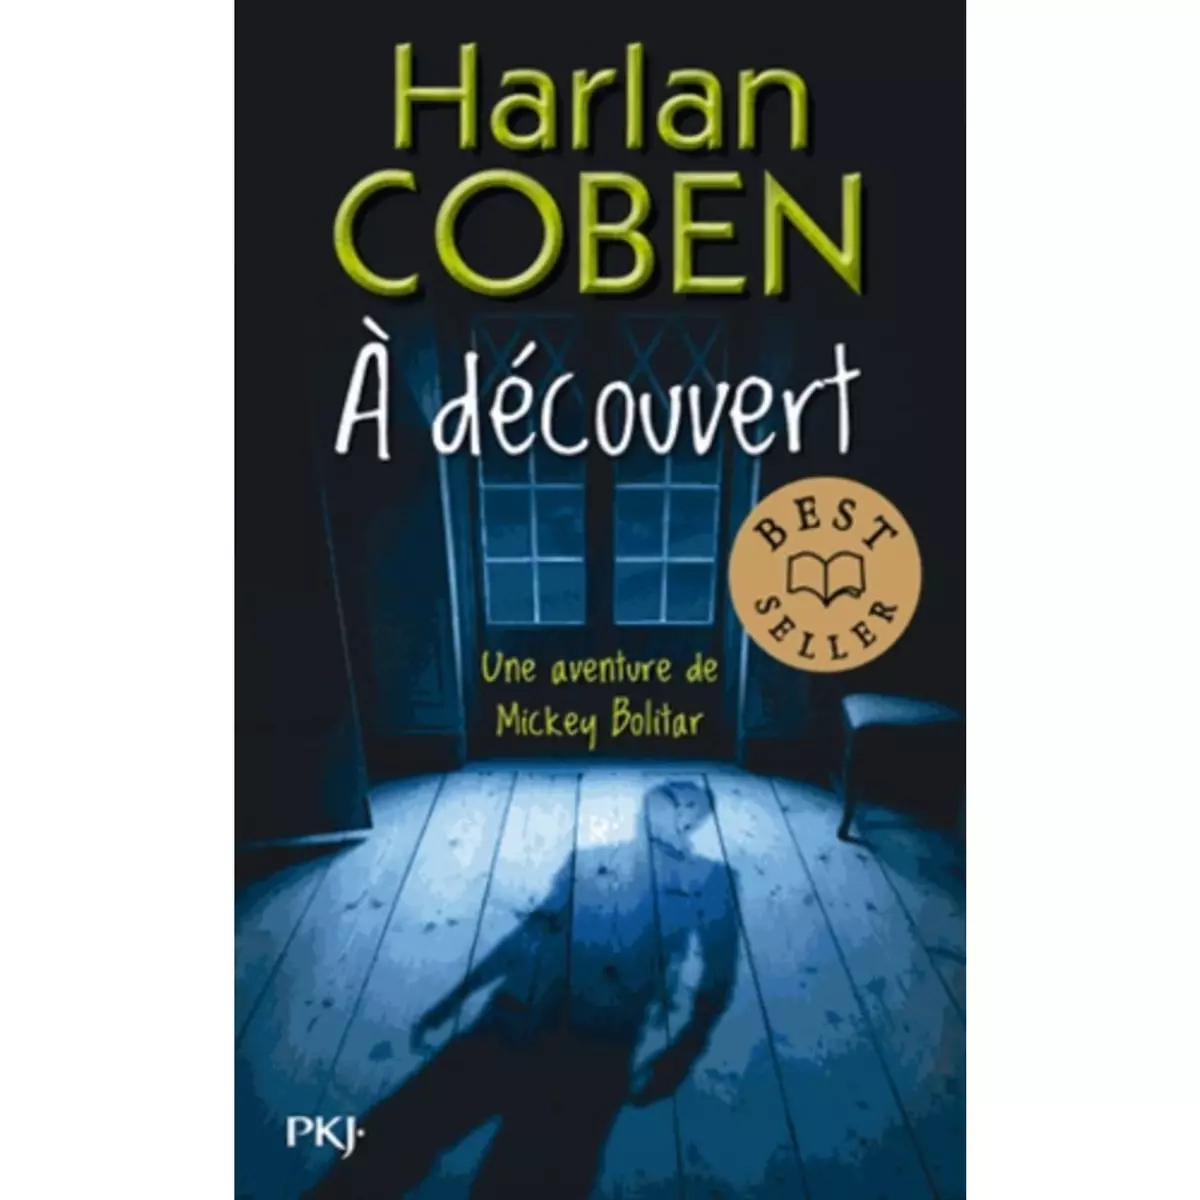  A DECOUVERT, Coben Harlan